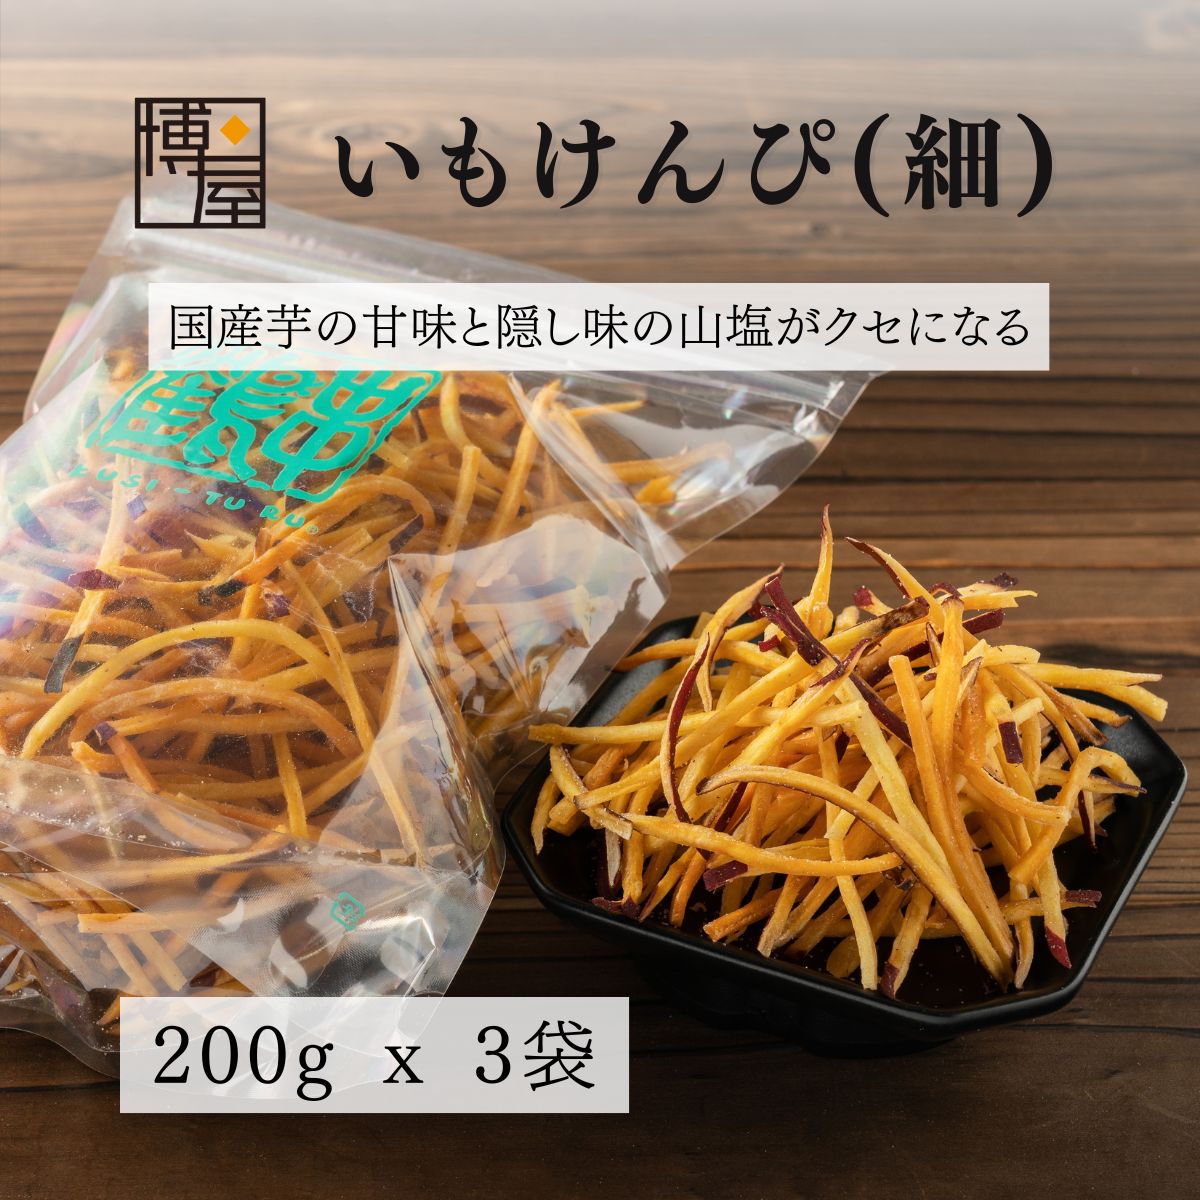 博屋 炸地瓜條 (細) 200g x 3包 夾鏈袋裝 地瓜洋芋片 會津 串鶴 福島 日本必買 | 日本樂天熱銷